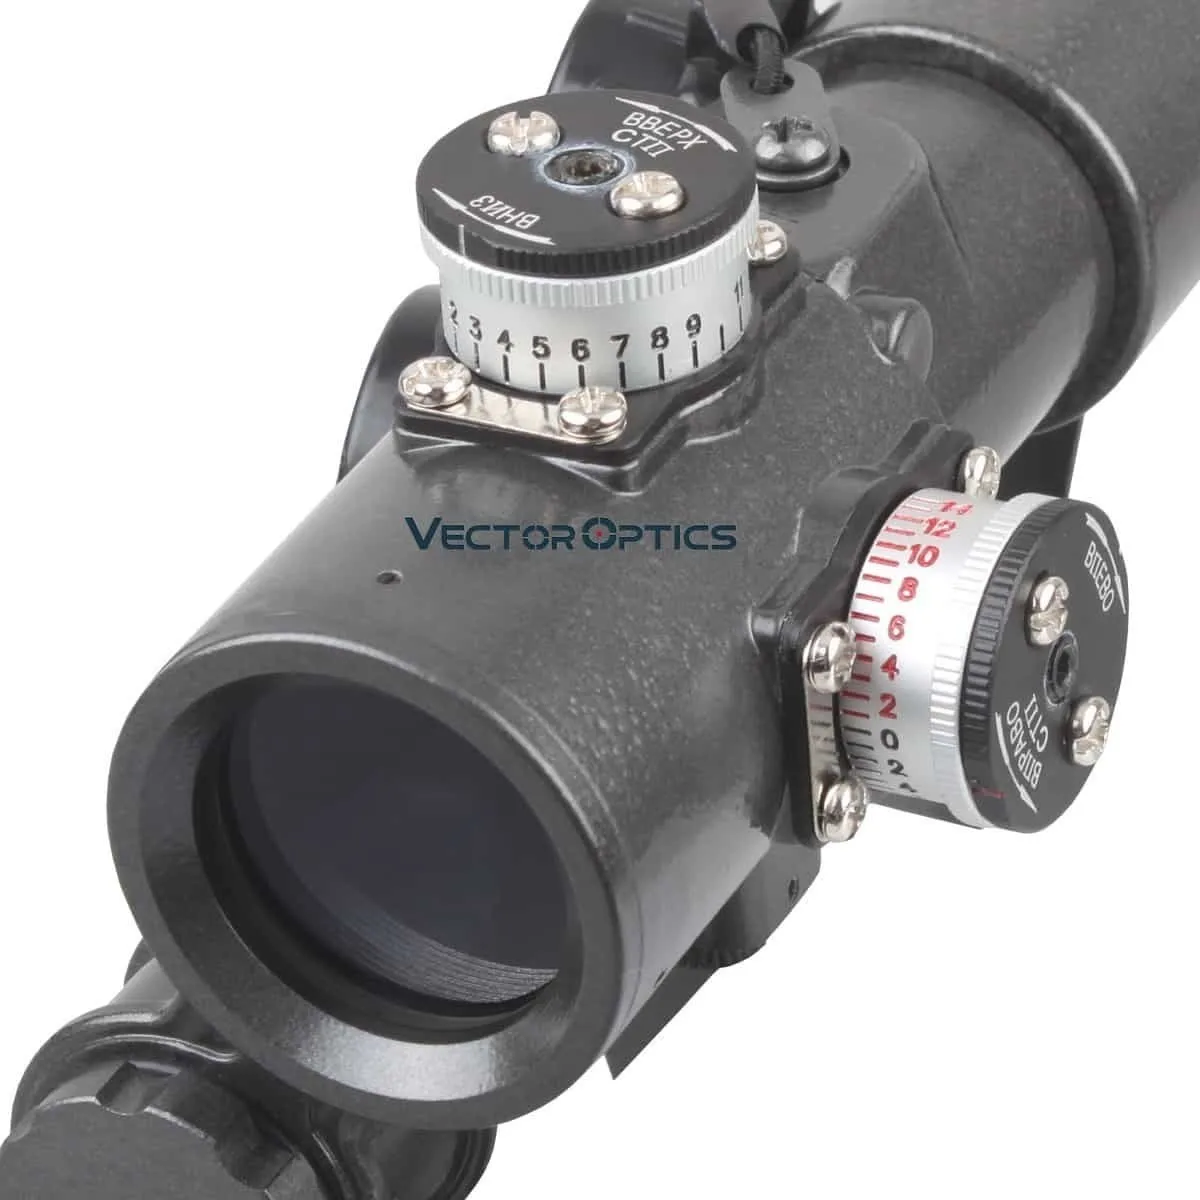 Векторная оптика SVD Dragunov 1x28 AK Red Dot Sight AK серия прицел для охотничье оружие